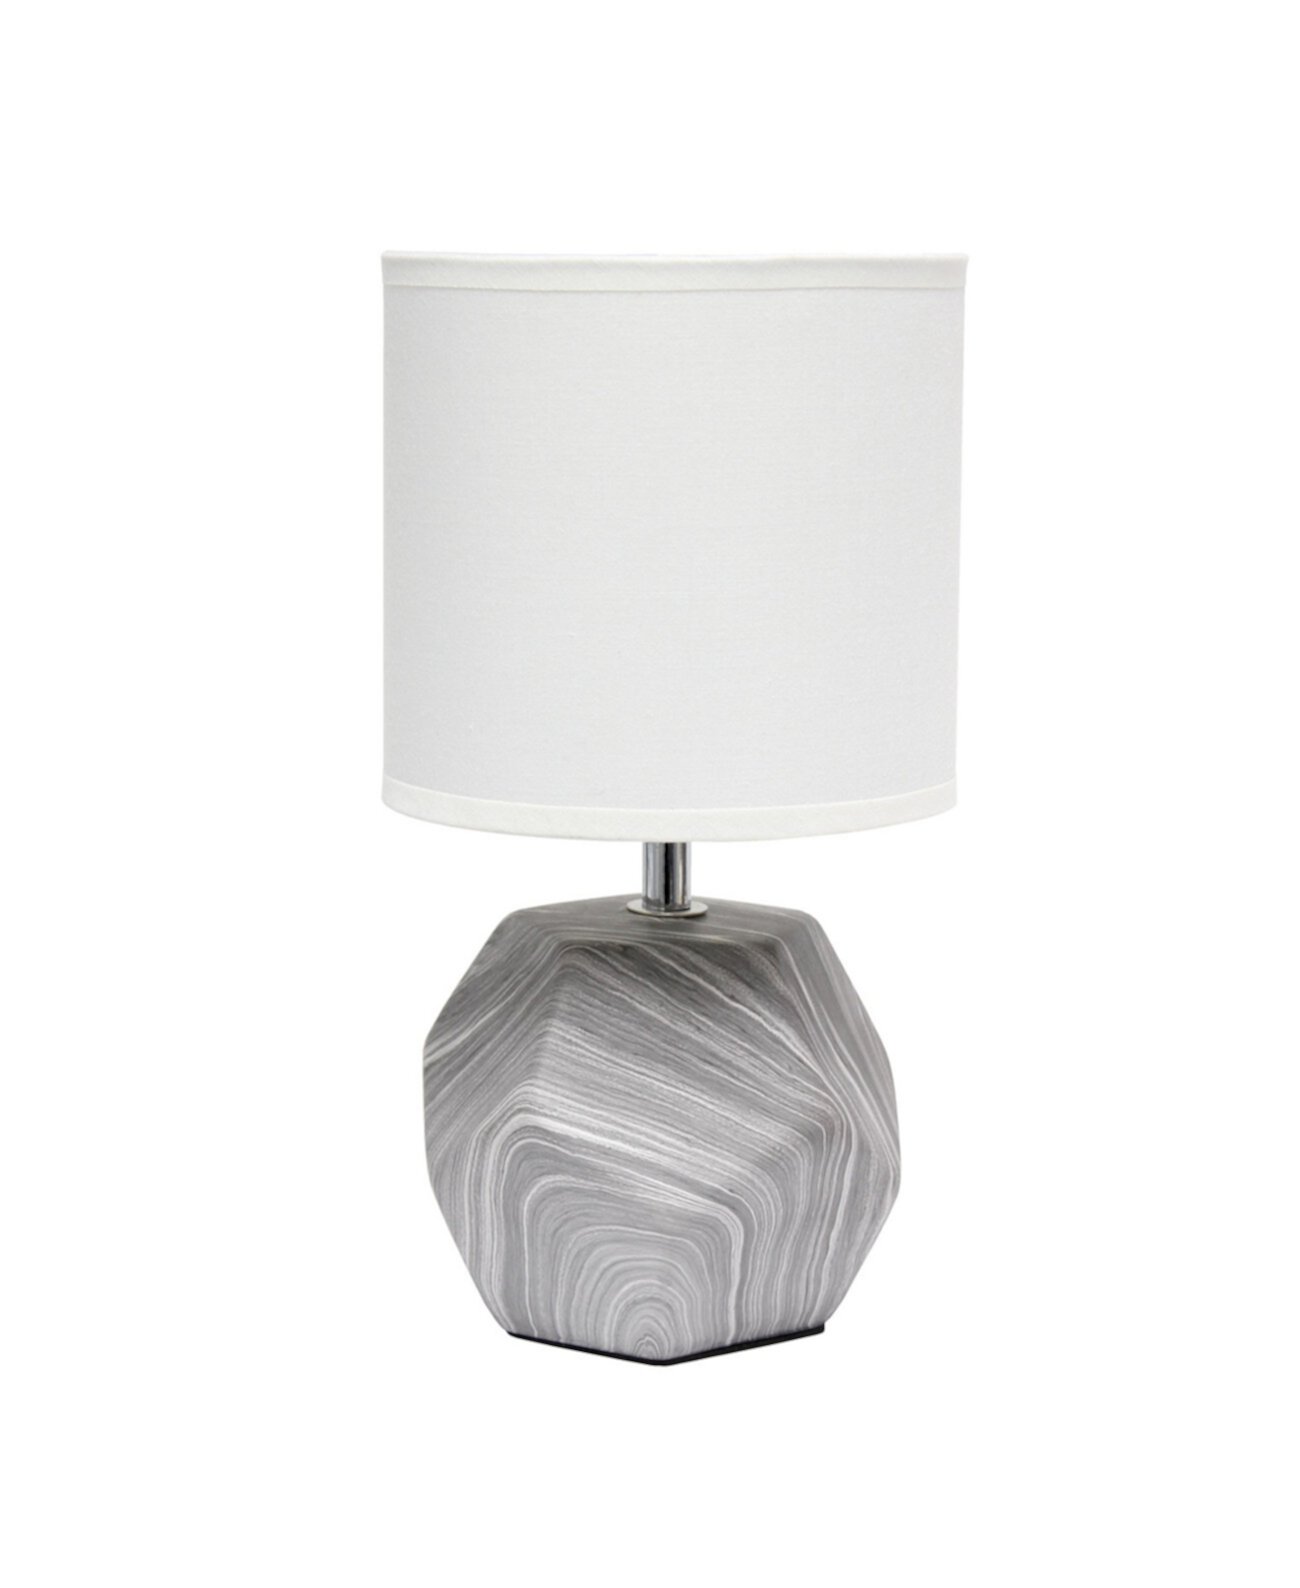 Мини-настольная лампа с круглой призмой и тканевым абажуром Simple Designs